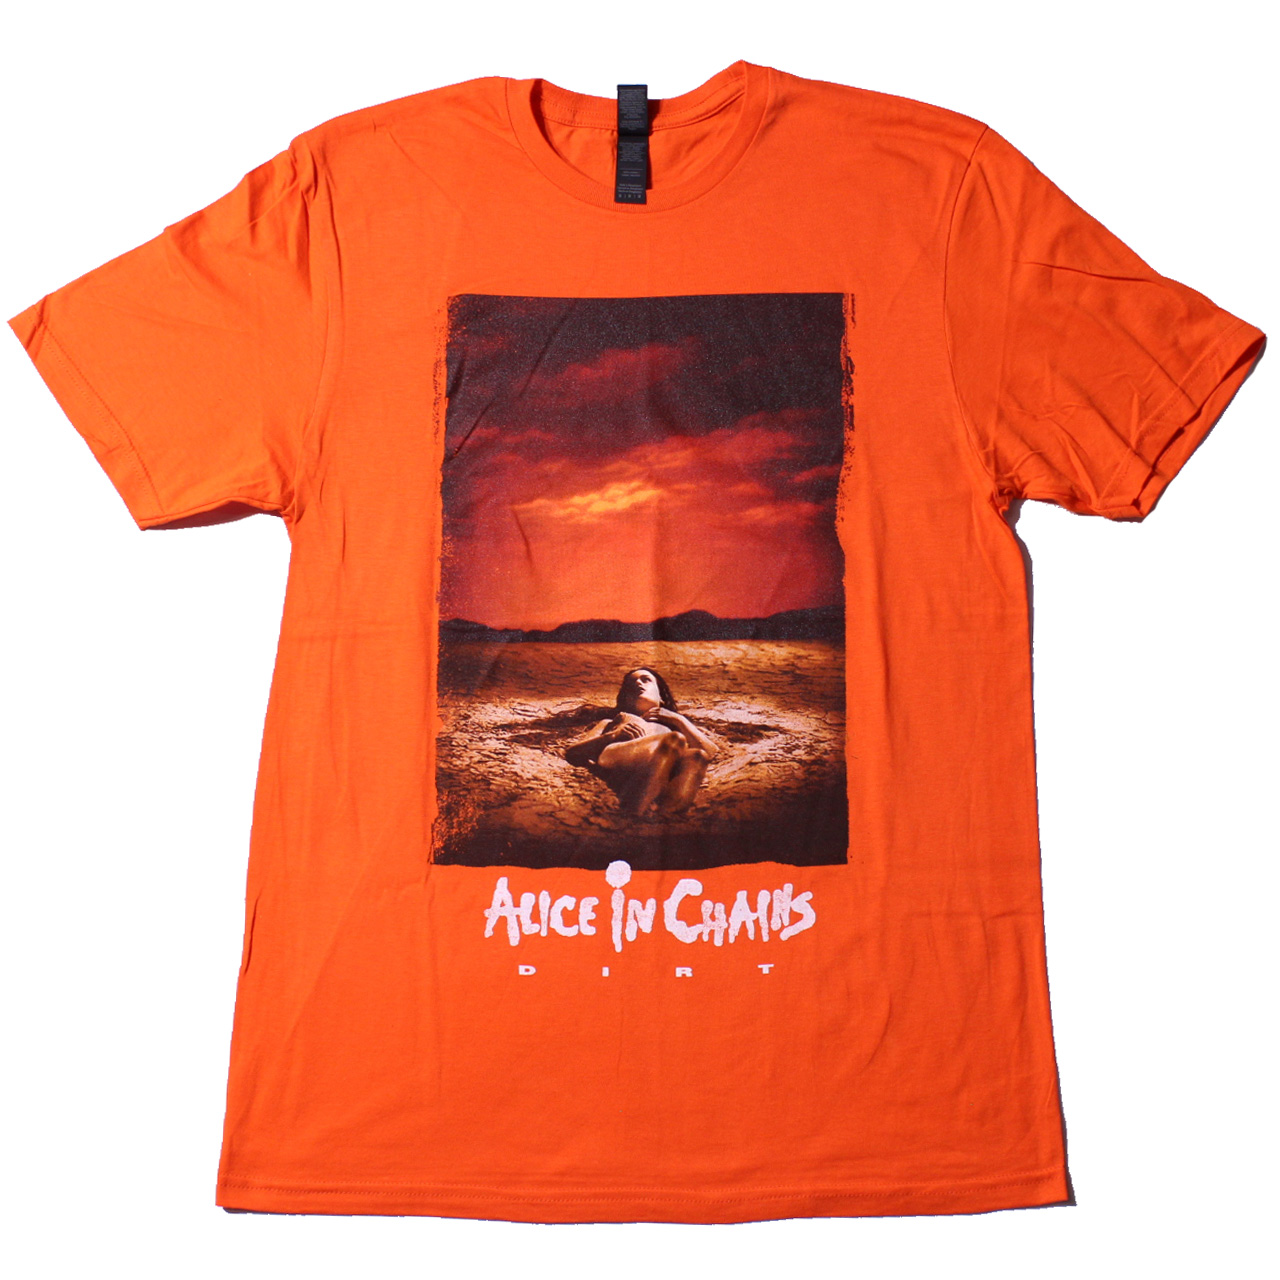 https://wildplanetmusic.com/product/alice-in-chainsdirt-importt-shirt-orangetsalinch032/